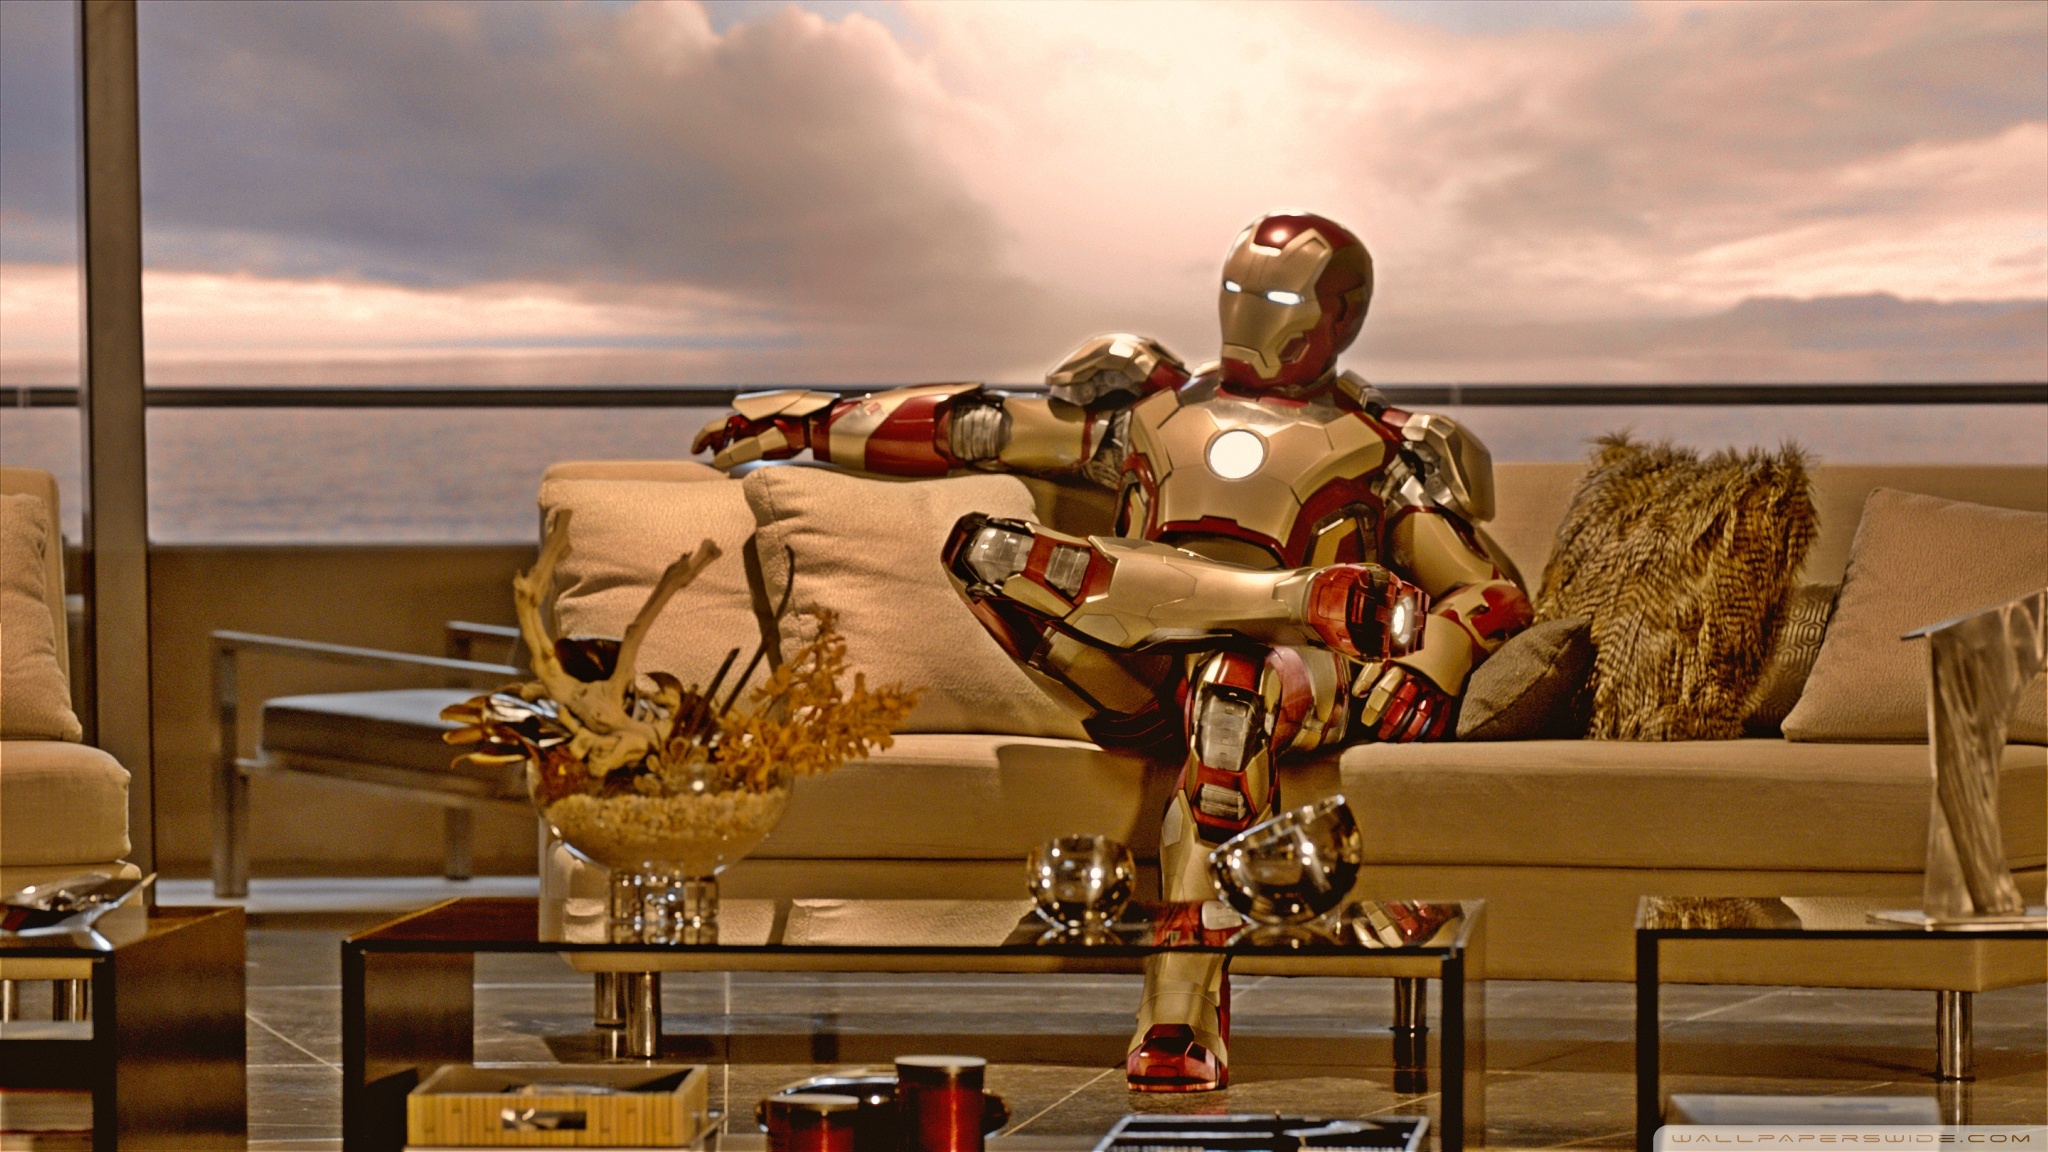 Iron Man 3 HD desktop wallpaper : Widescreen : High Definition ...